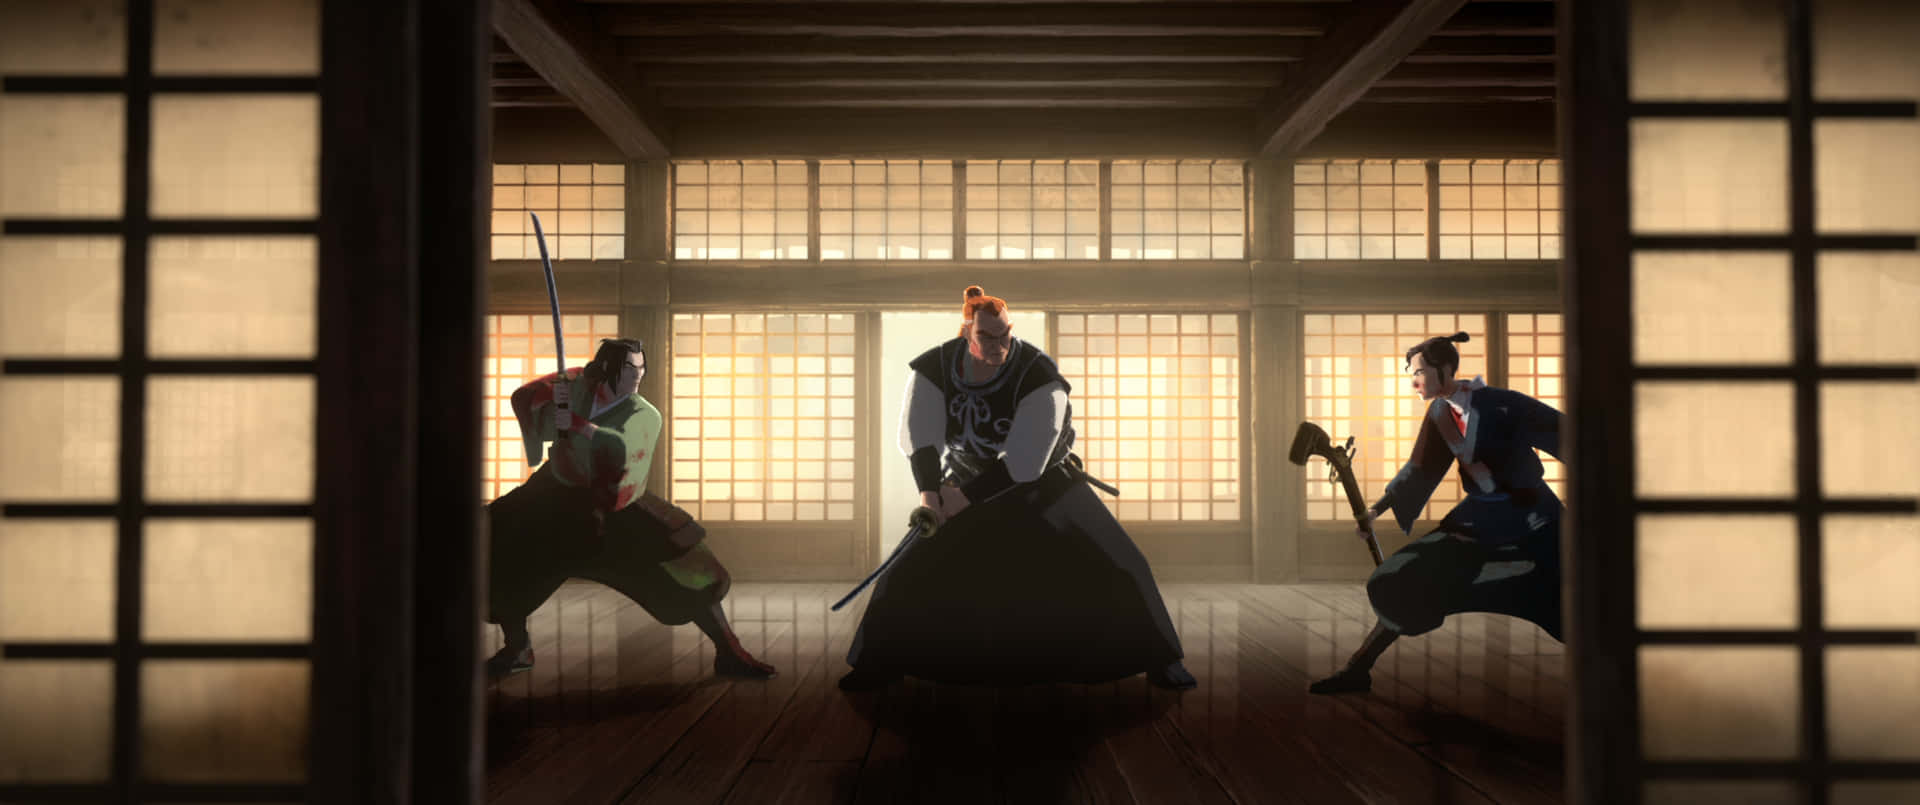 Samurai Standoffin Dojo Wallpaper